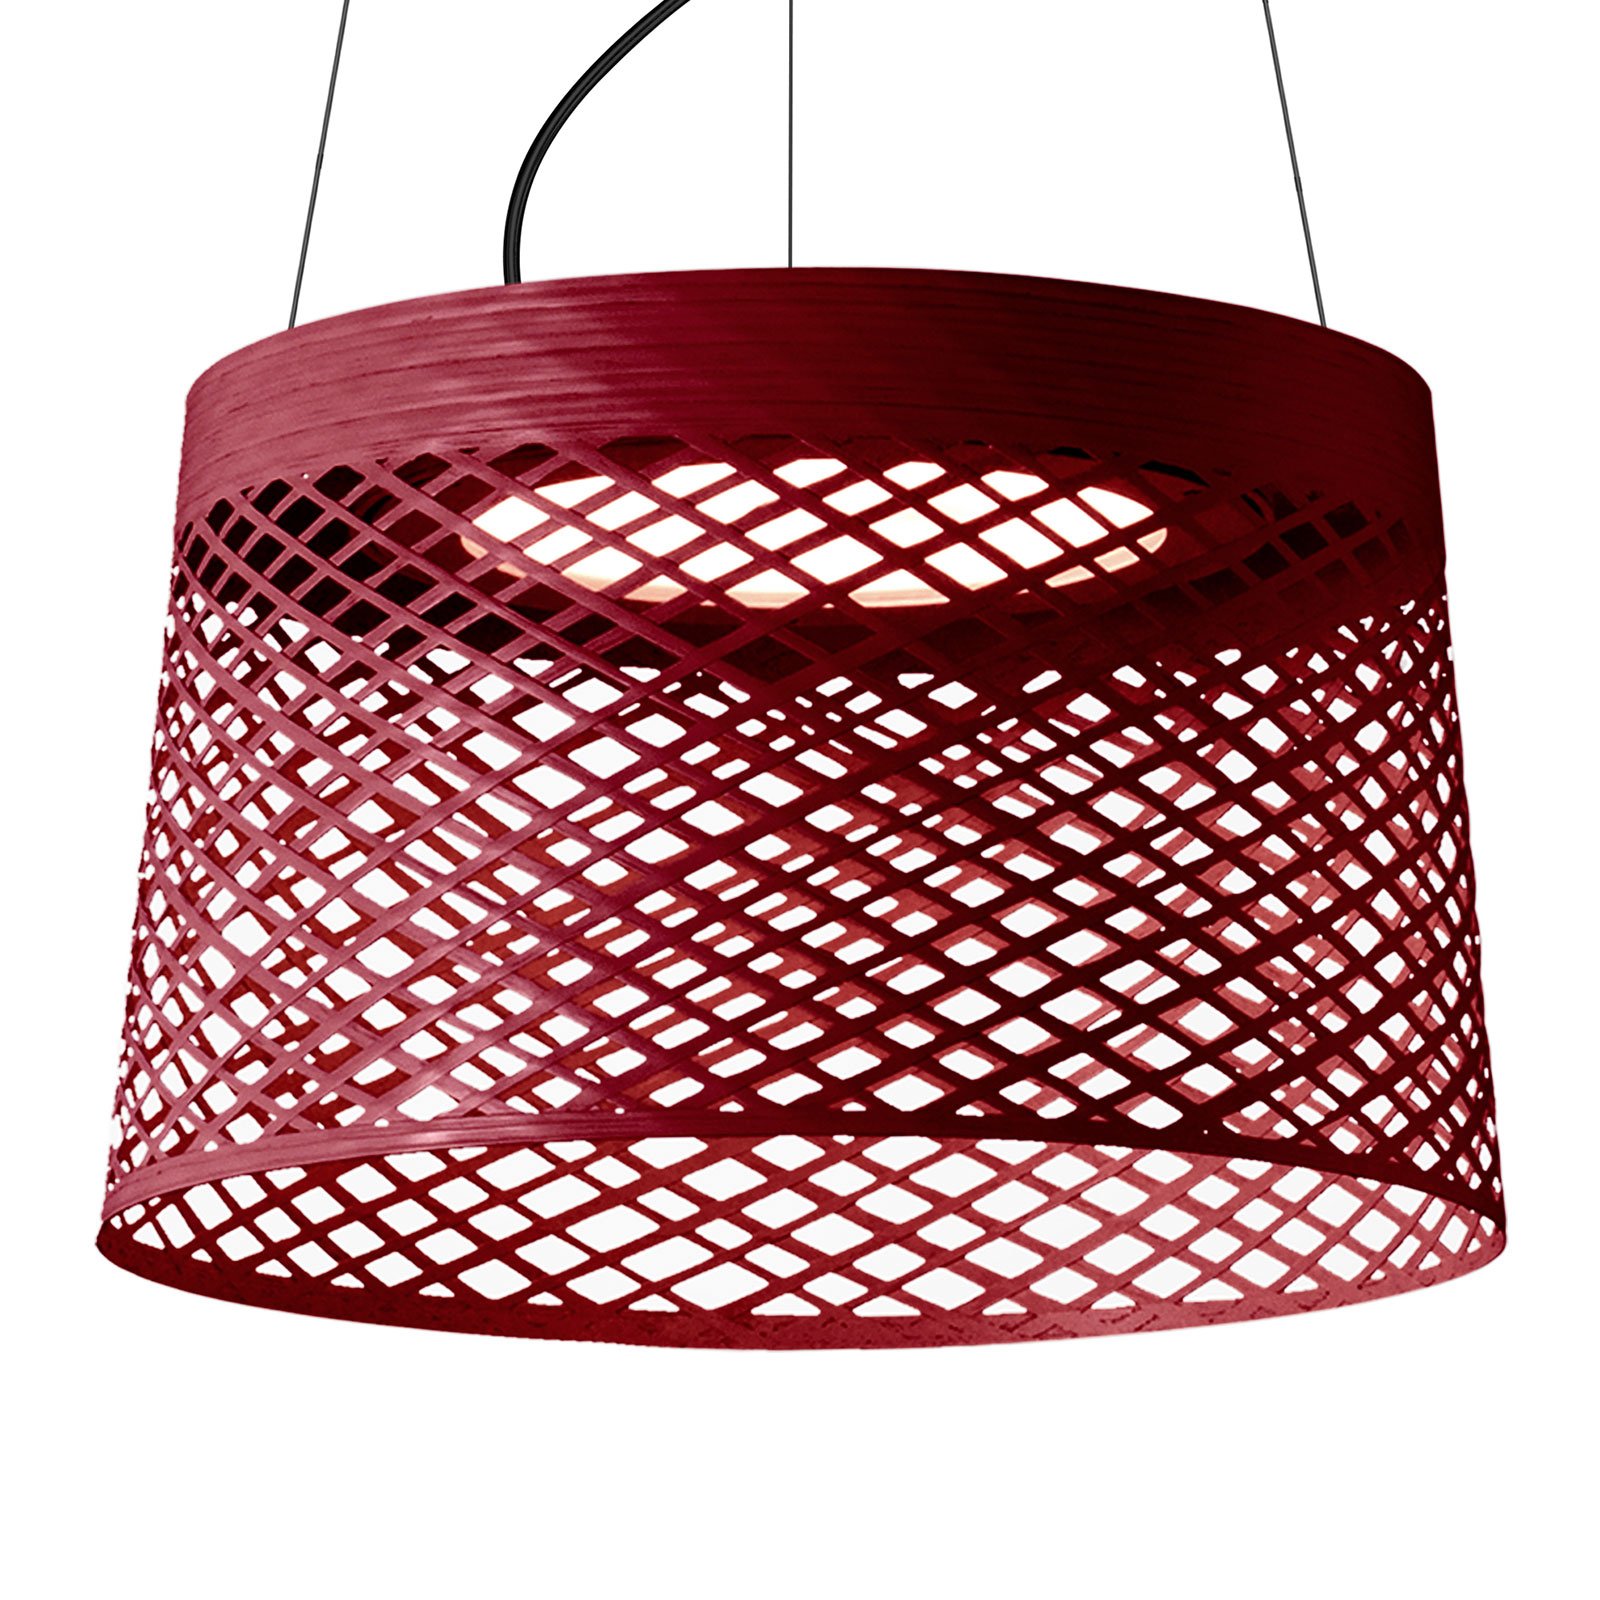 "Foscarini Twiggy Grid" LED pakabinamas šviestuvas, karmino raudonos